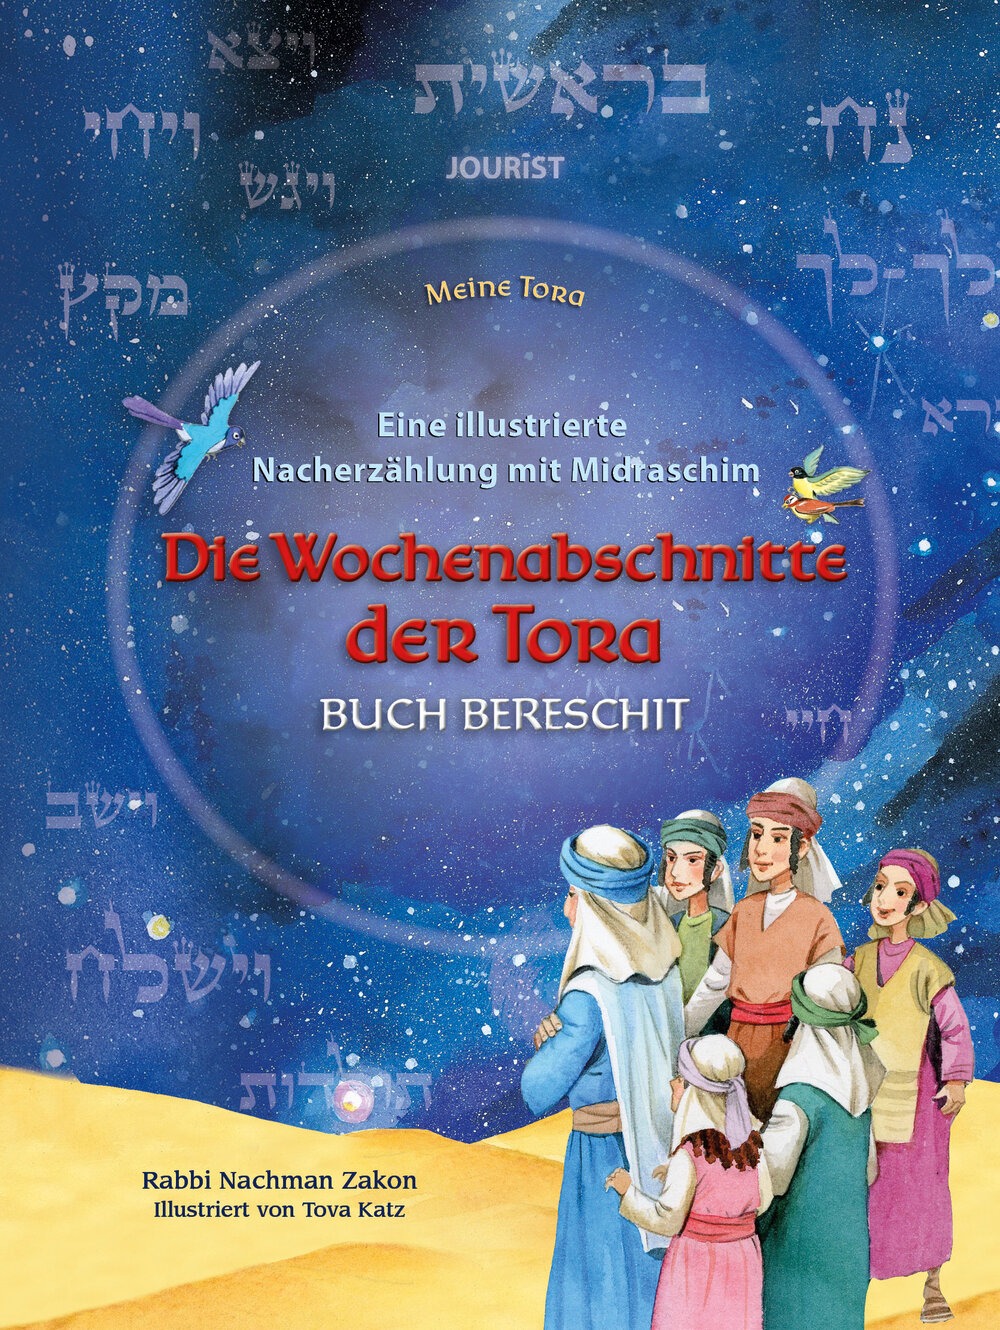 Die Wochenabschnitte der Tora. Band 1. Buch Bereschit. Eine illustrierte Nacherzählung mit Midraschim.